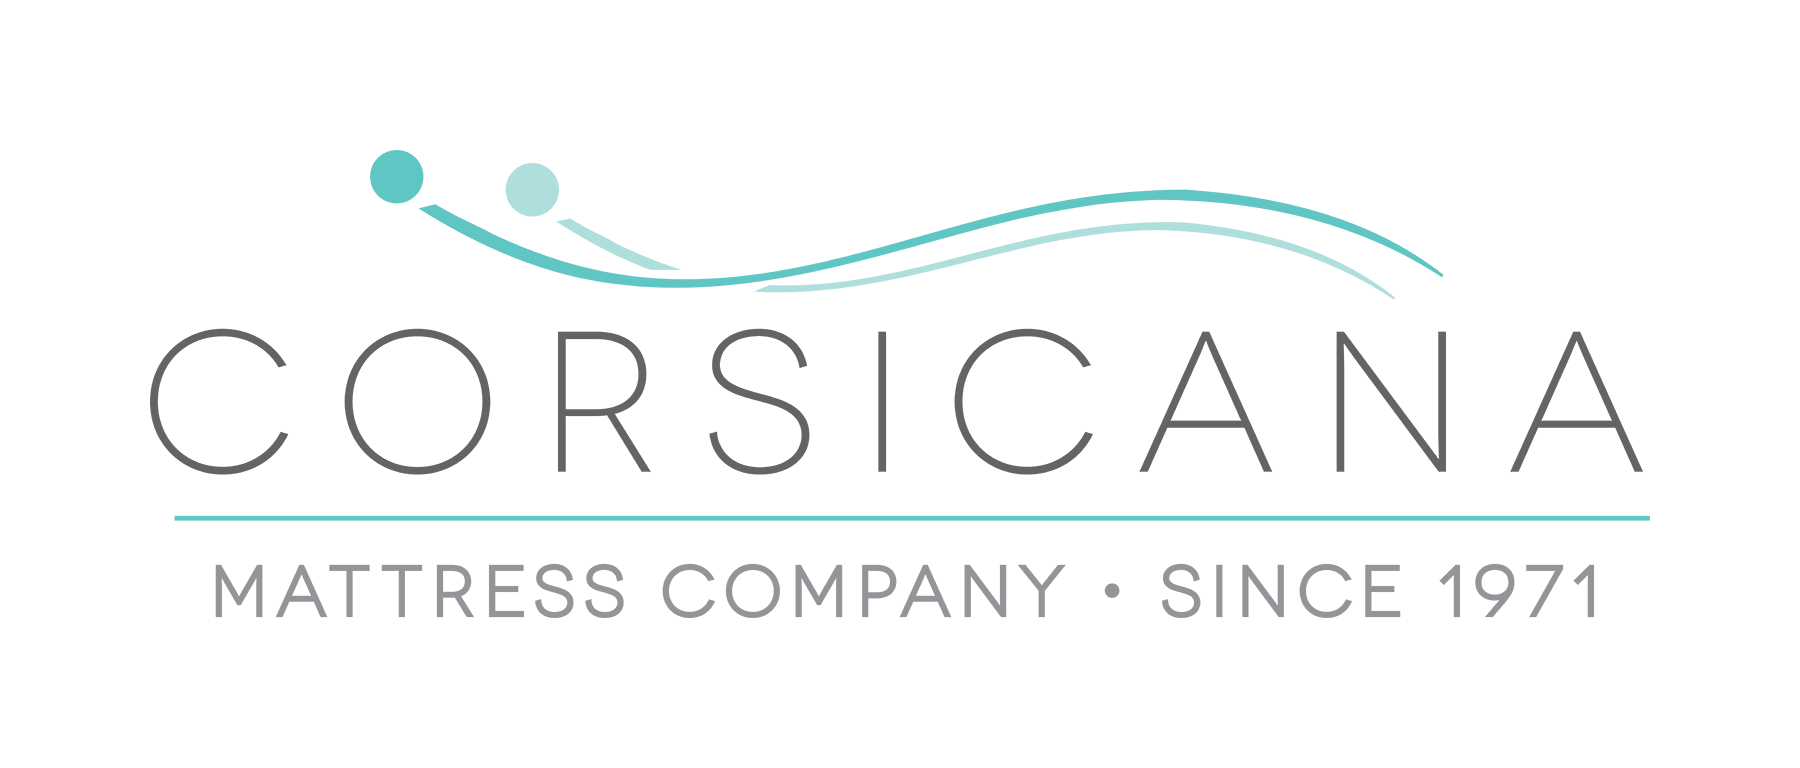 corsicana mattress company reviews